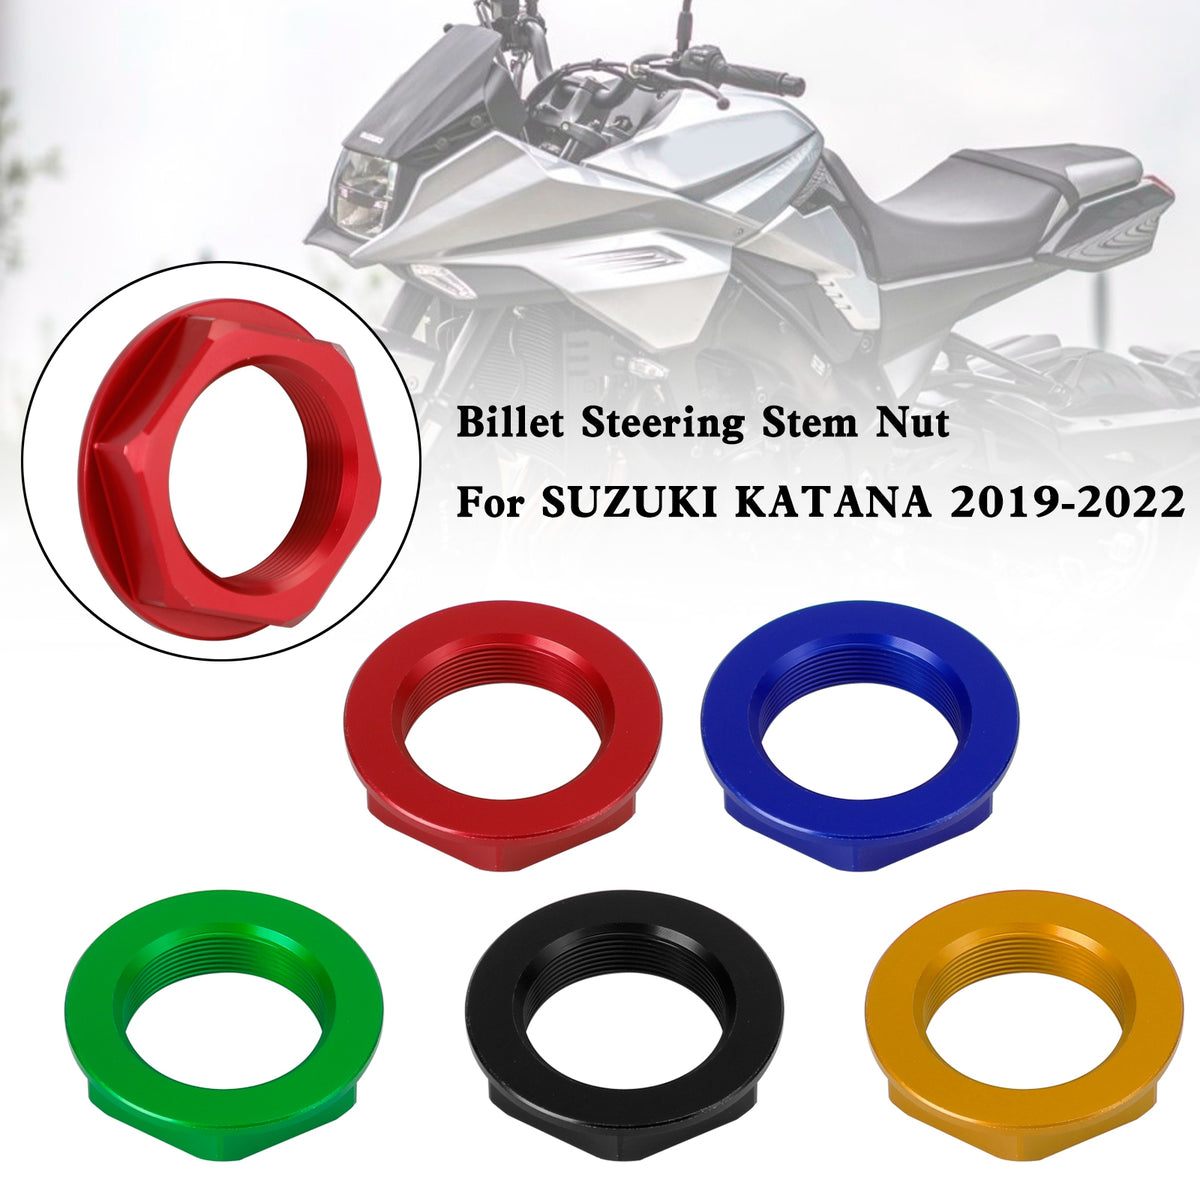 Billet Steering Stem Nut For SUZUKI GSXR 600/750 YZF-R1 ZX6R S1000RR